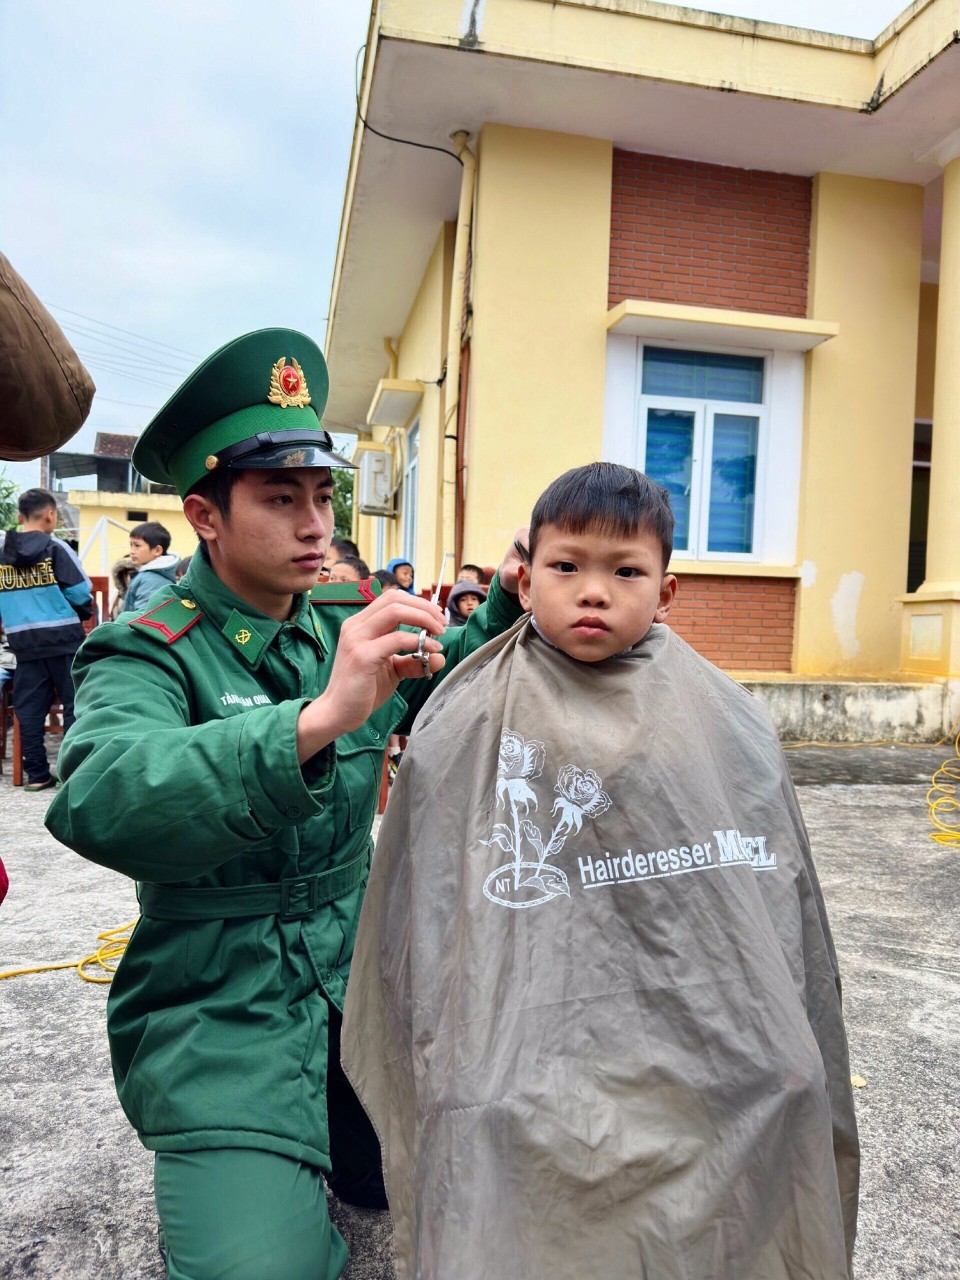 Cán bộ, chiến sỹ Đồn Biên phòng Quảng Đức tham gia tổ chức cắt tóc miễn phí cho các cháu trên địa bàn chuẩn bị vui xuân đón tết